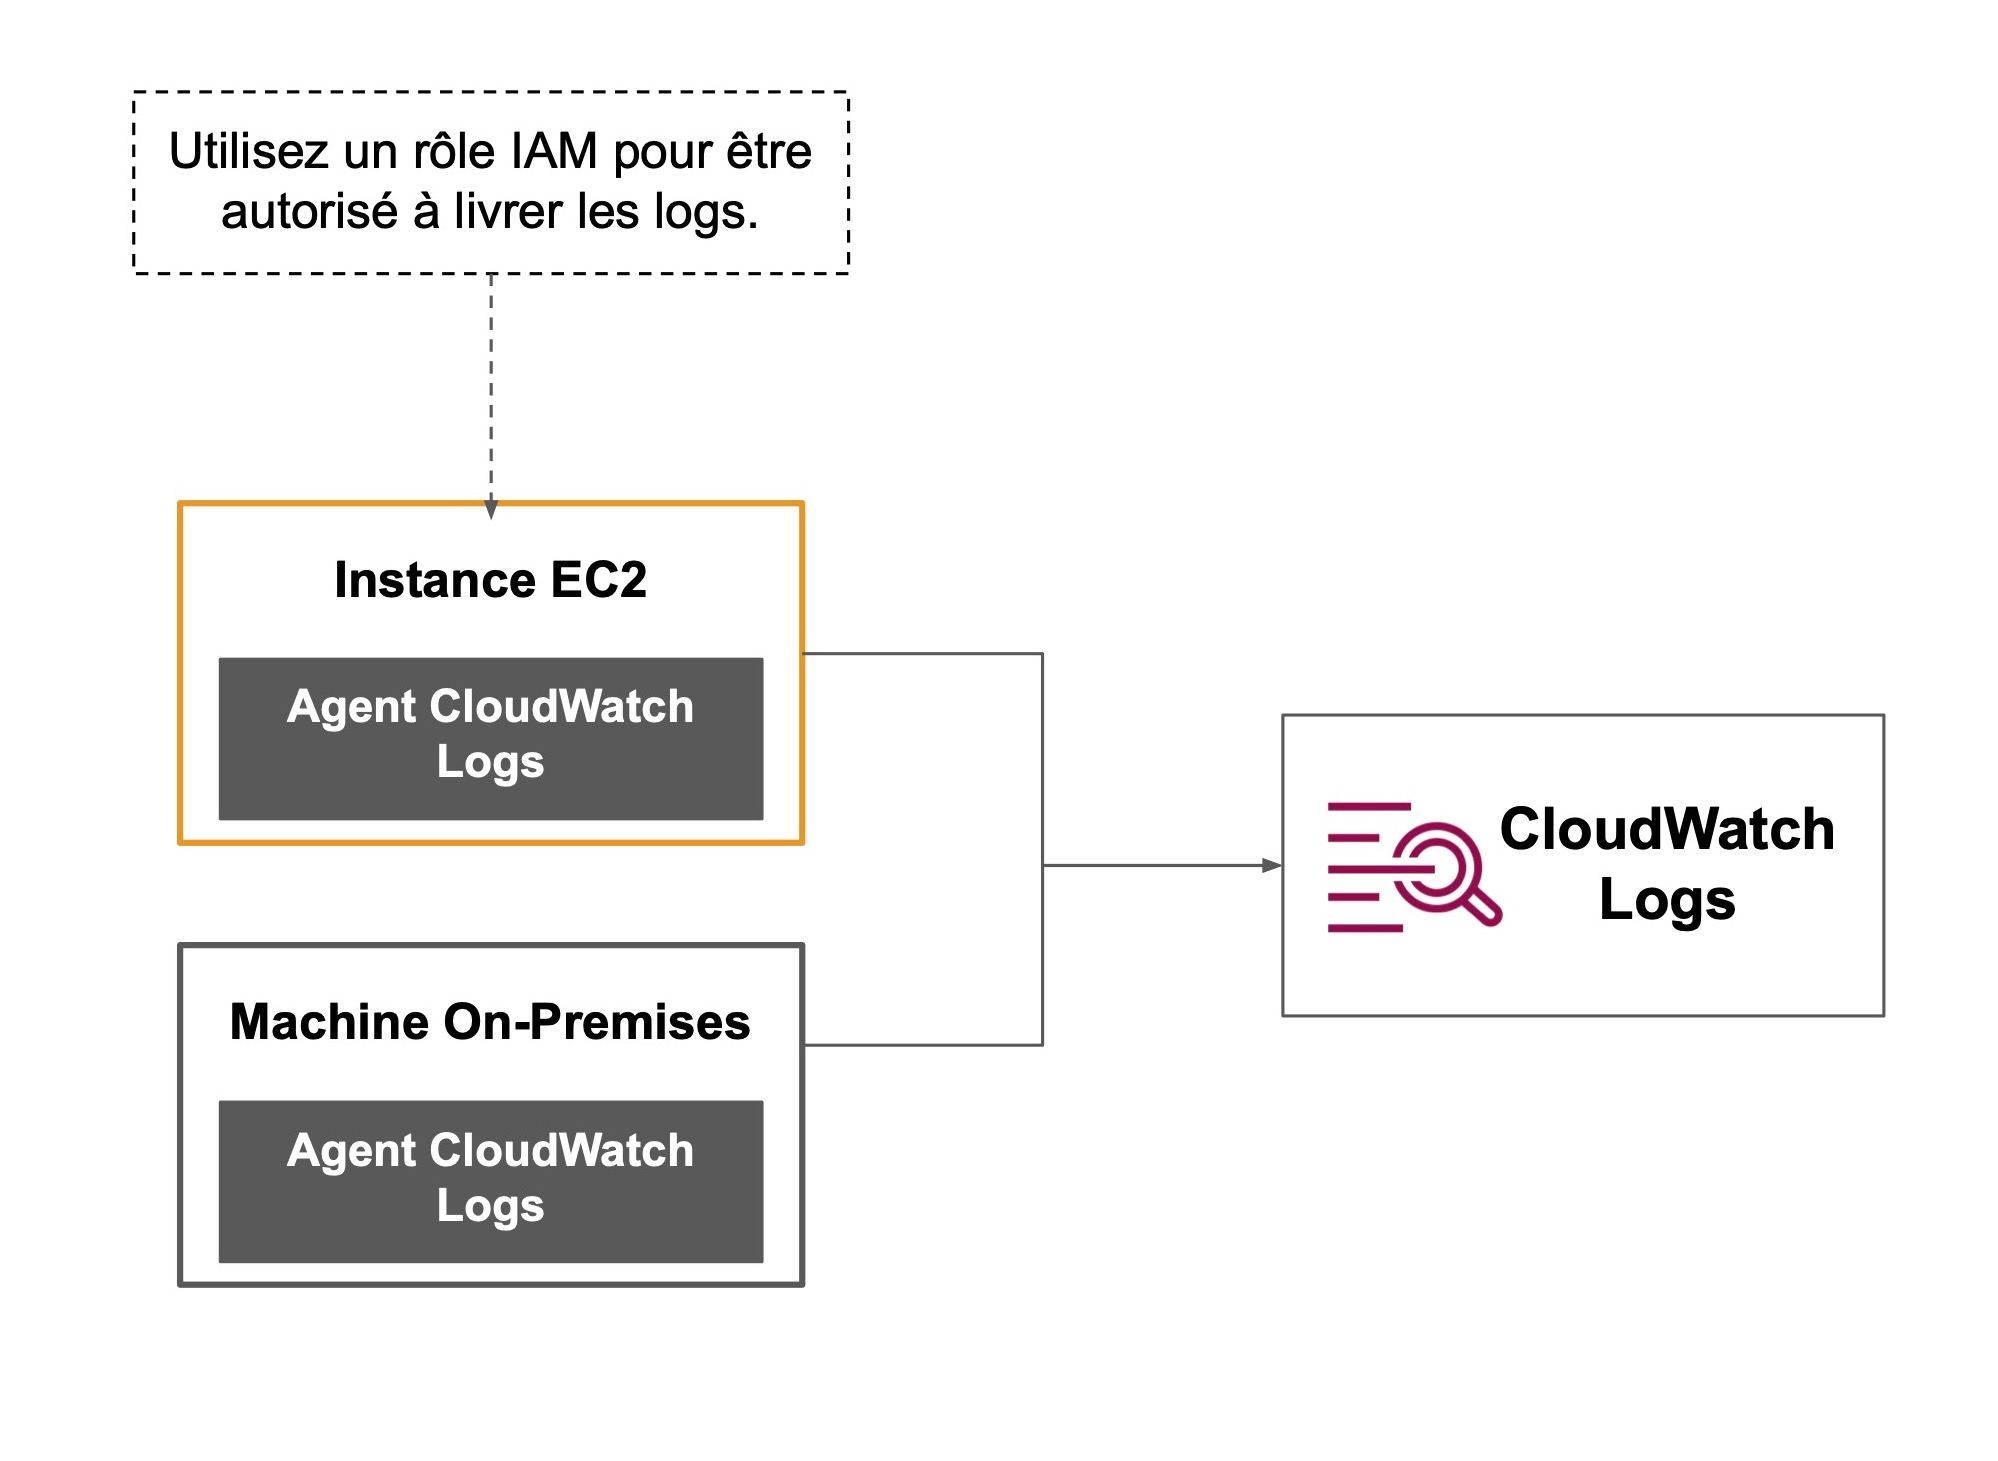 Les flèches mènent de deux Agents CloudWatch Logs, l'instance EC2 et Machine On-Premises vers CloudWatch logs